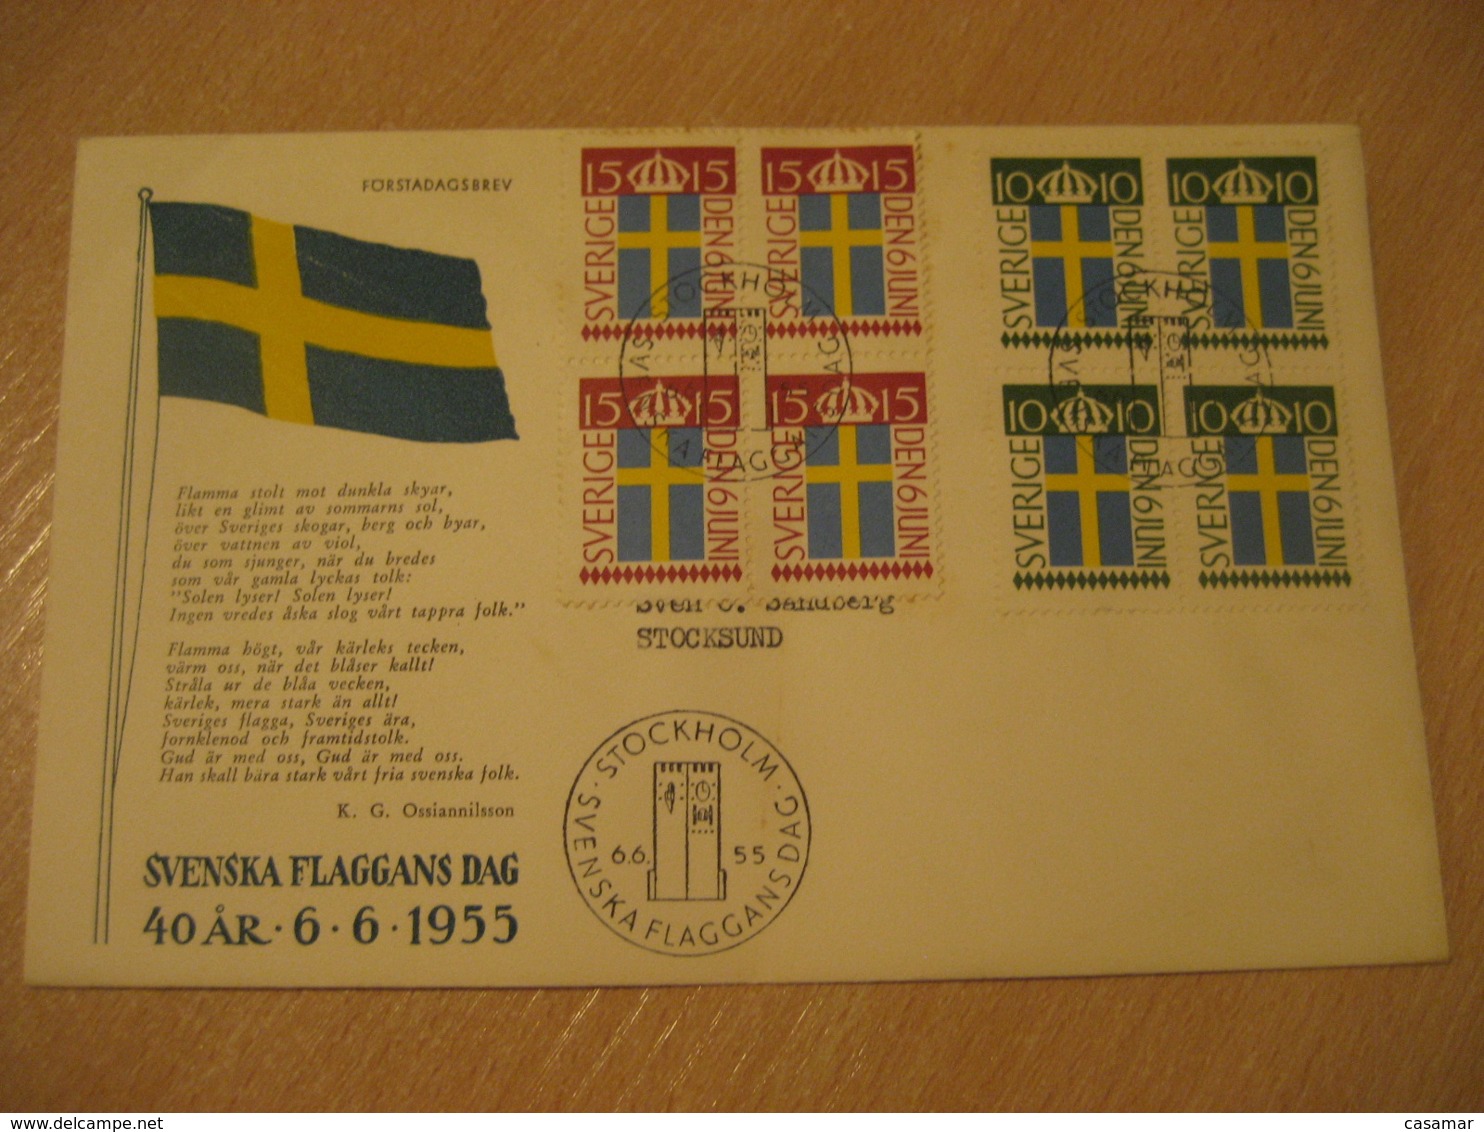 STOCKHOLM 1955 Svenska Flaggans Dag FDC Cancel Cover SWEDEN - Covers